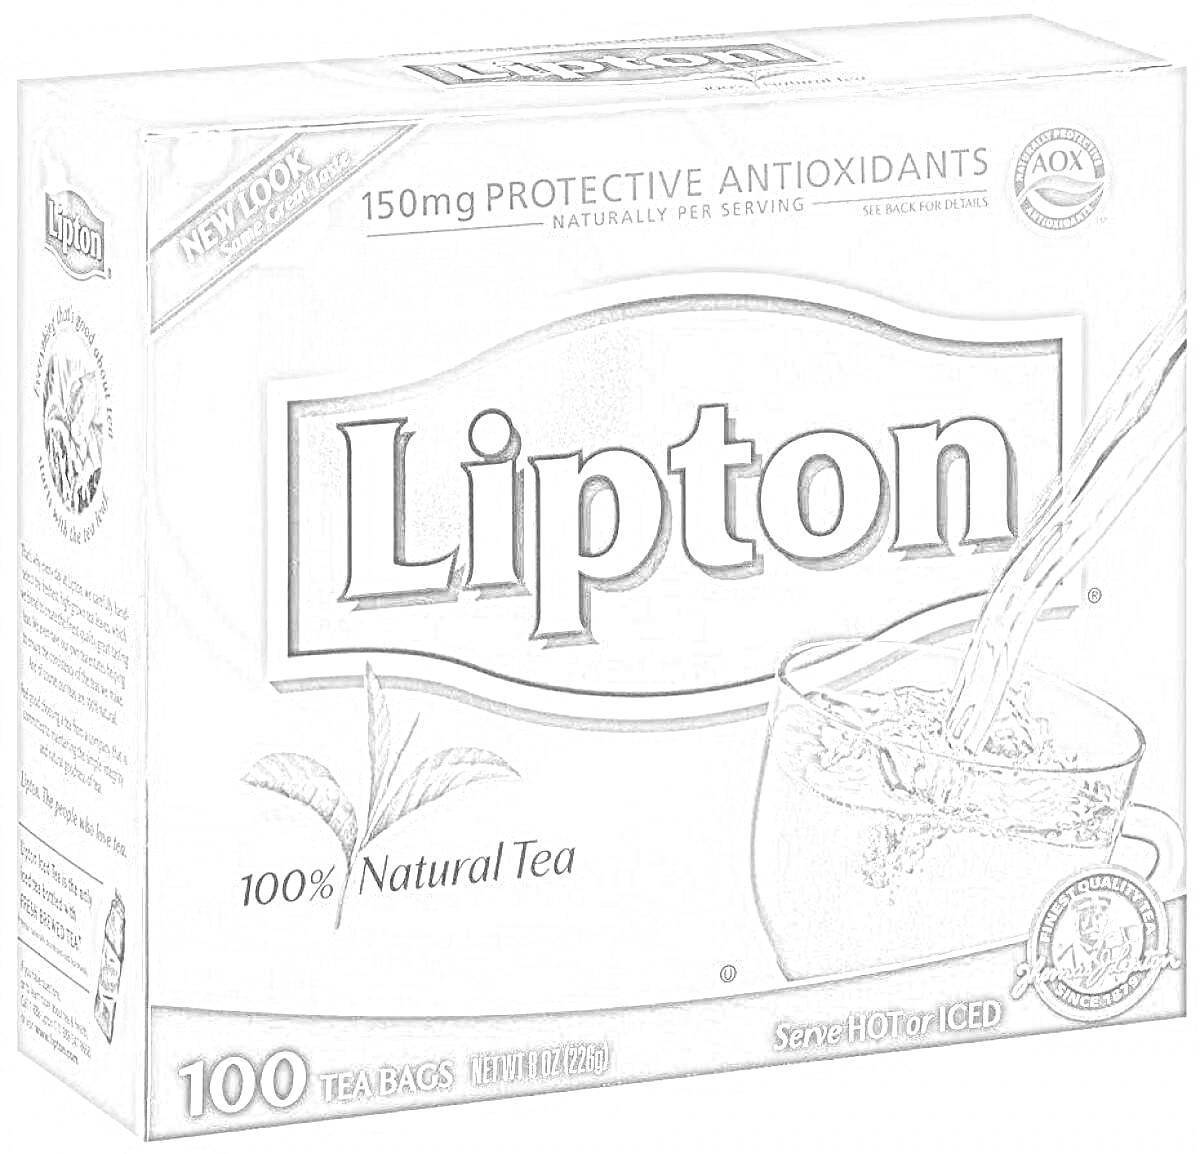 Раскраска Упаковка чая Lipton с изображением кружки, чайных пакетиков и листьев чая, 150 мг антиоксидантов на порцию, 100 чайных пакетиков, подавайте горячим или охлажденным.